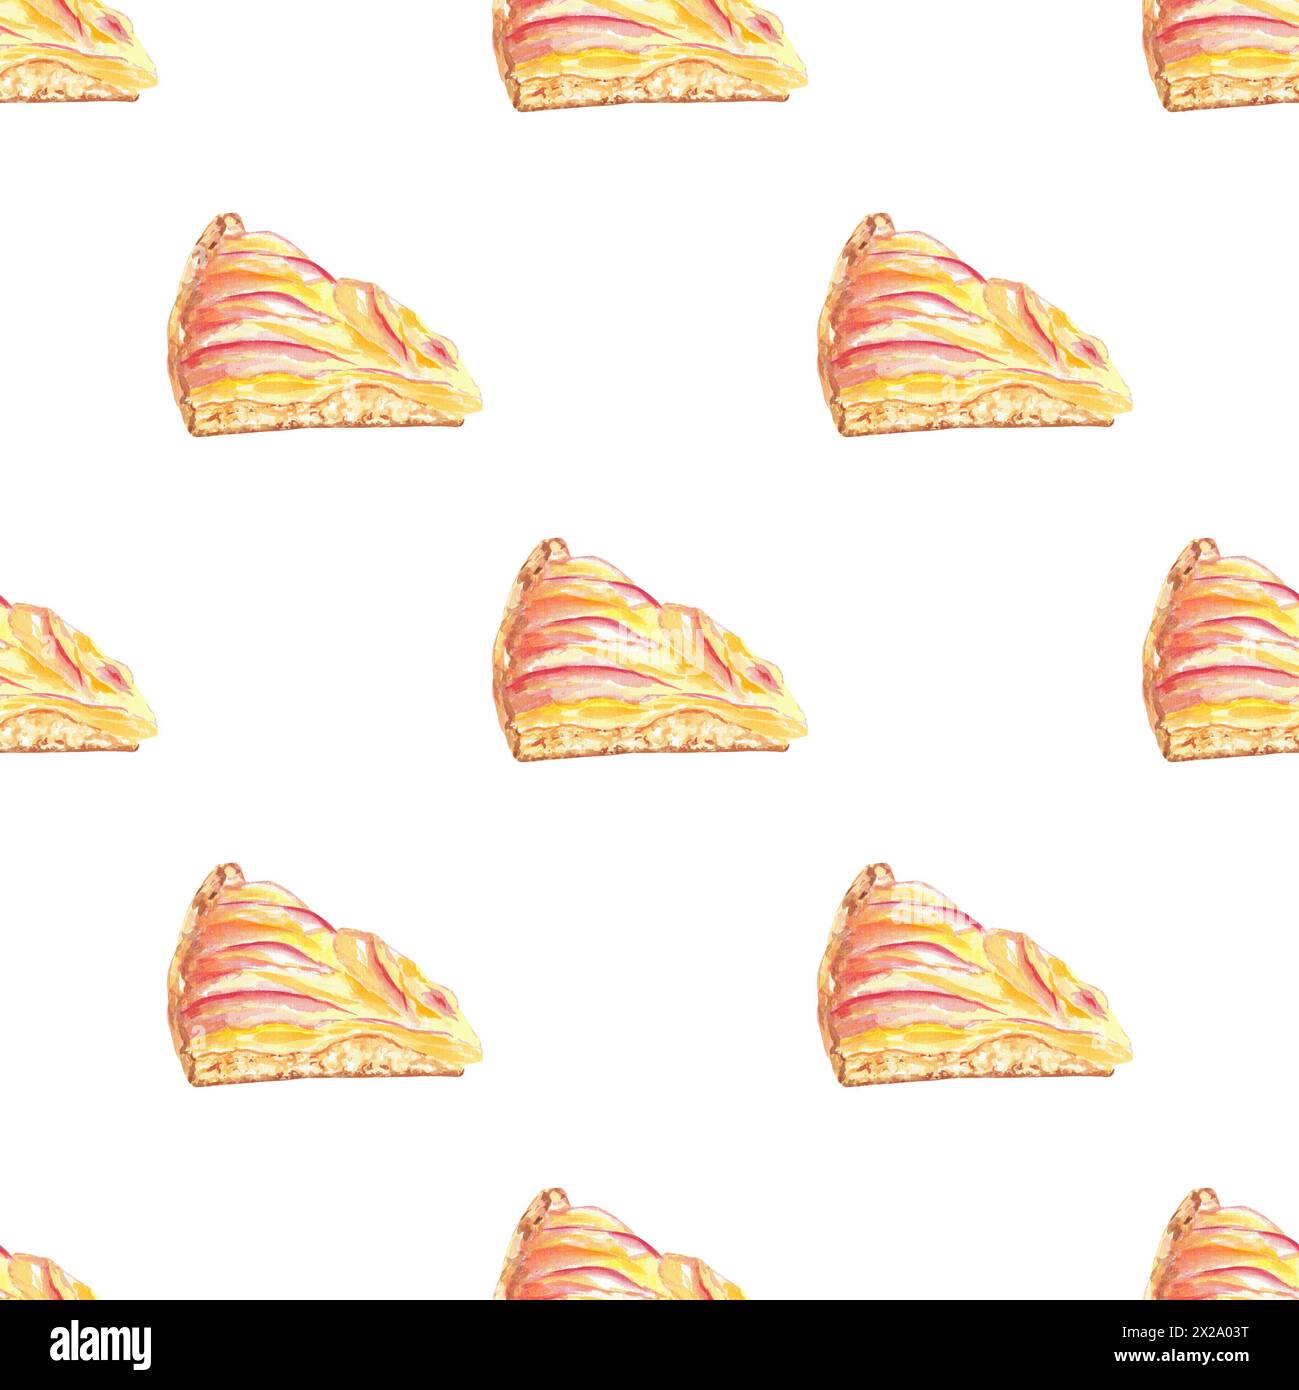 Apfelkuchen, Kuchen nahtloses Muster handbemalt. Botanische Illustration auf weißem Hintergrund. Art Food Design, Tapeten, Textil, Verpackung Stockfoto